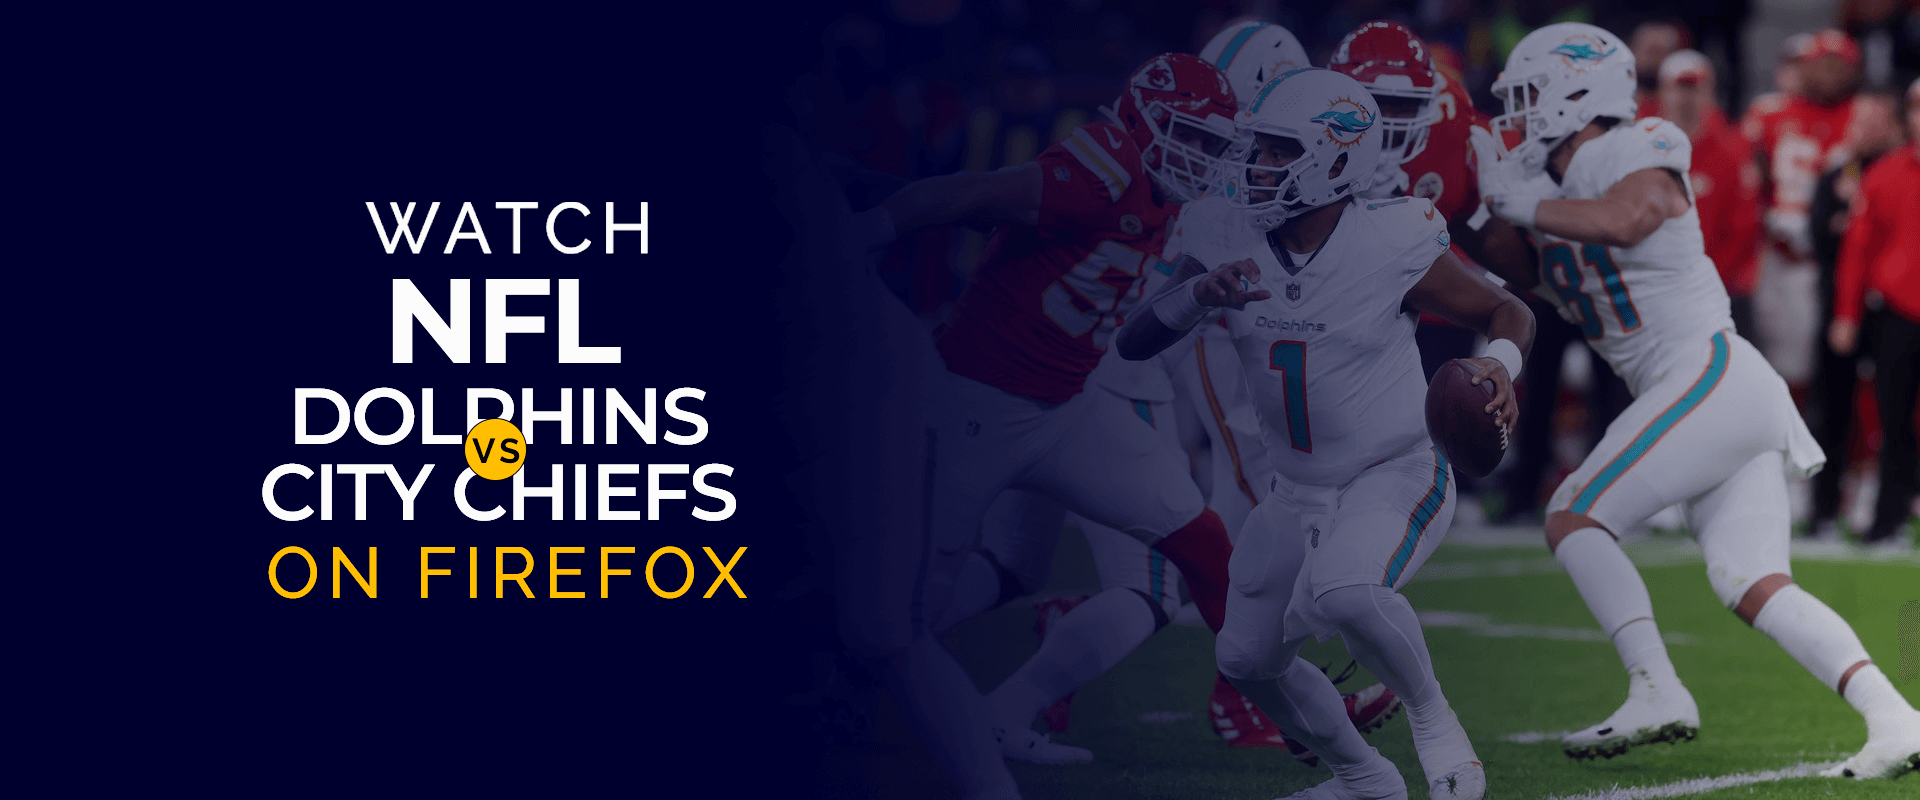 شاهد مباراة NFL Miami Dolphins vs Kansas City Chiefs على Firefox